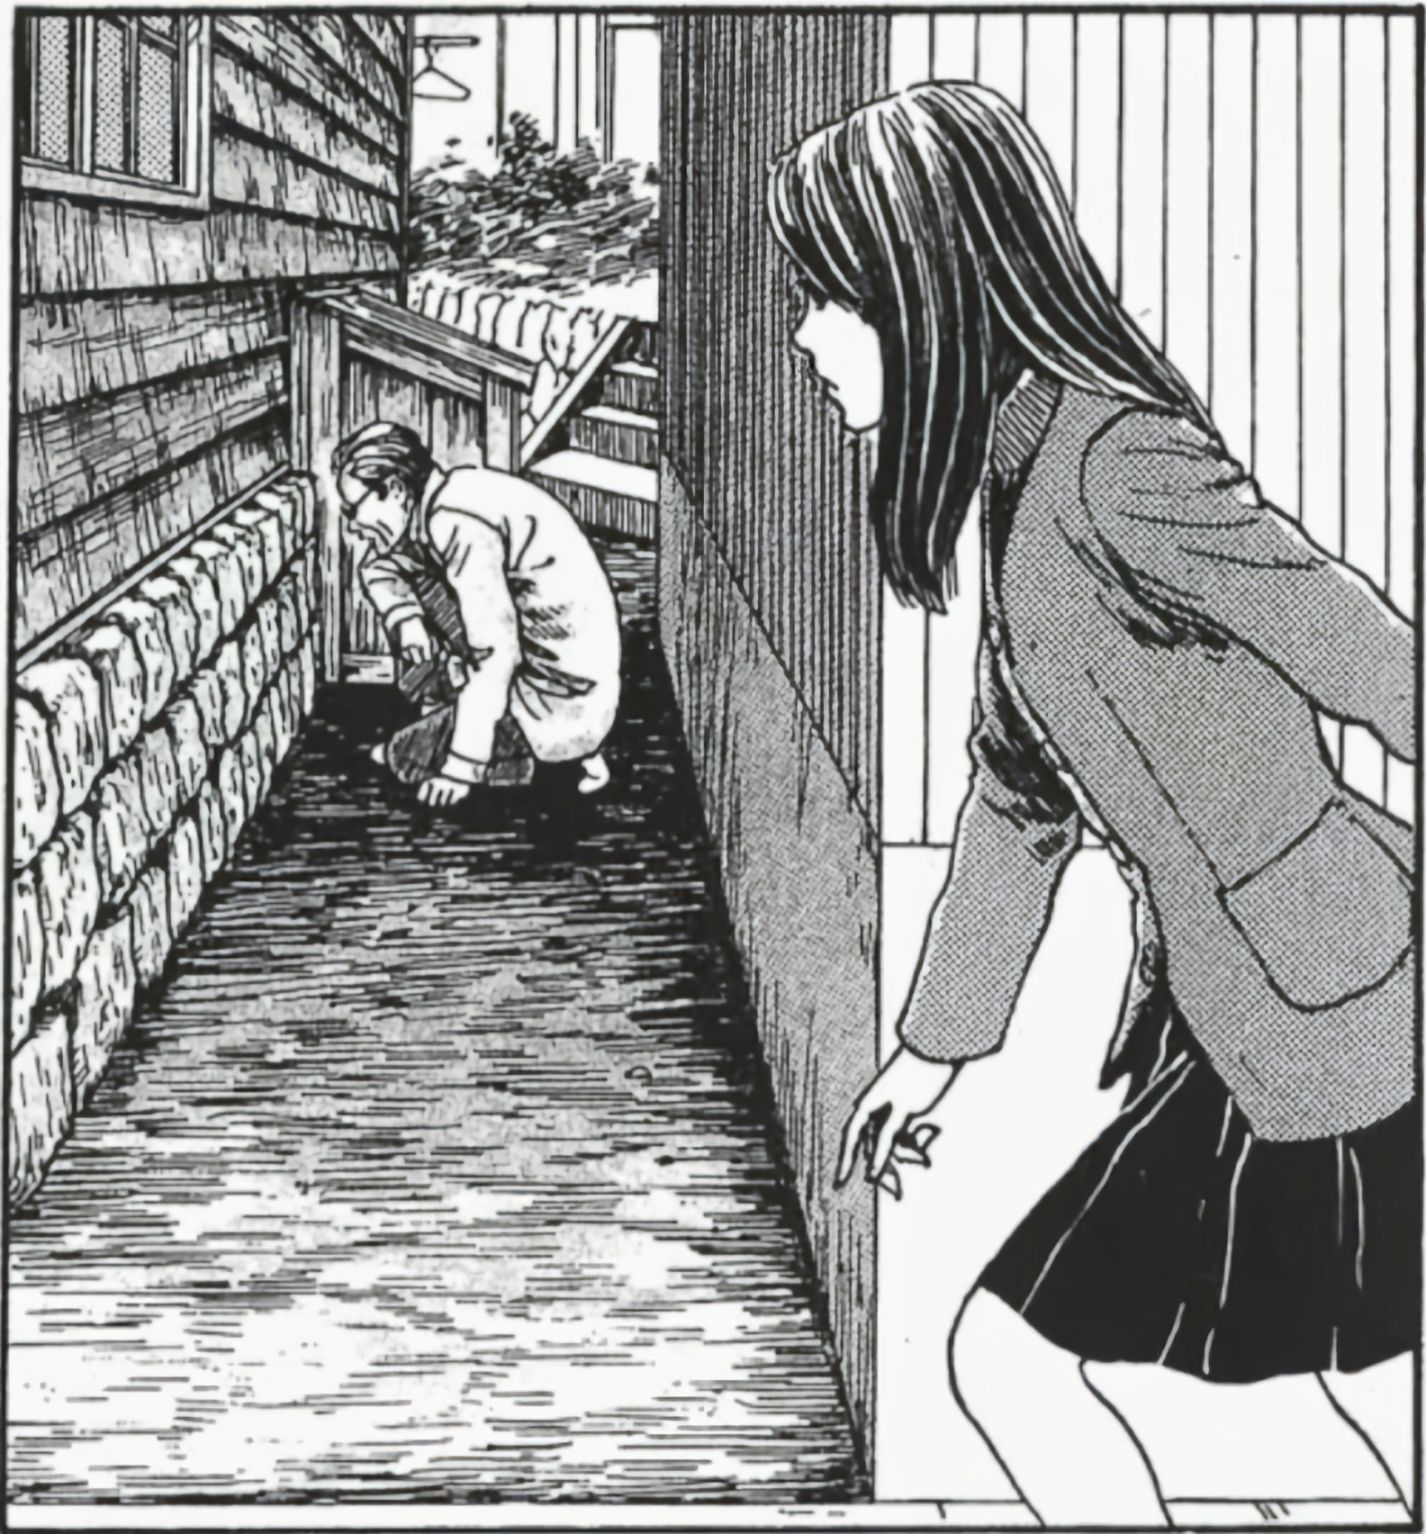 【影视动漫】伊藤润二的恐怖漫画《漩涡》-第7张